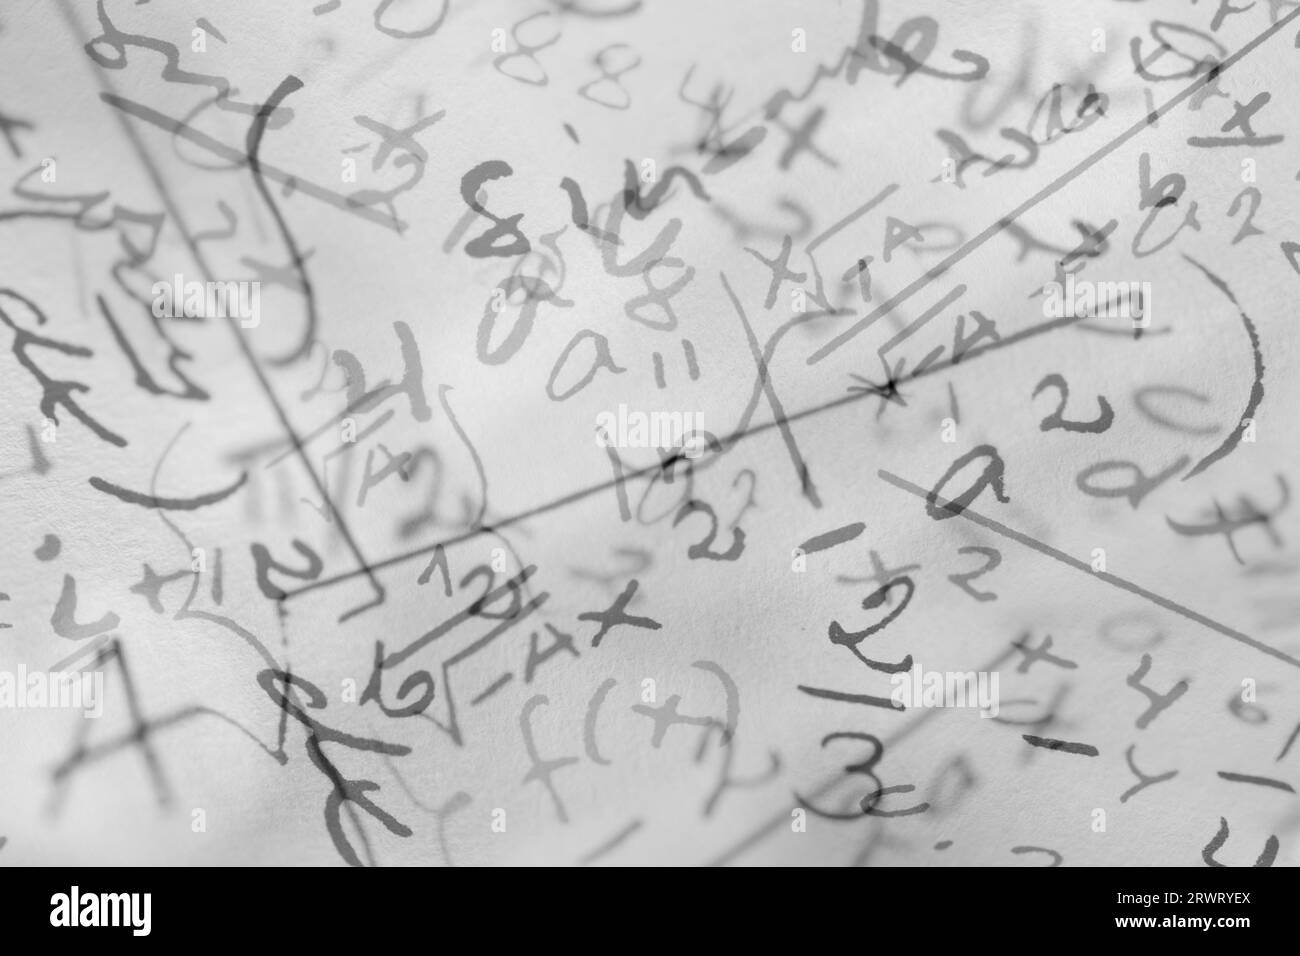 Fotocomposizione di formule matematiche scritte a mano, adatte per lo sfondo Foto Stock